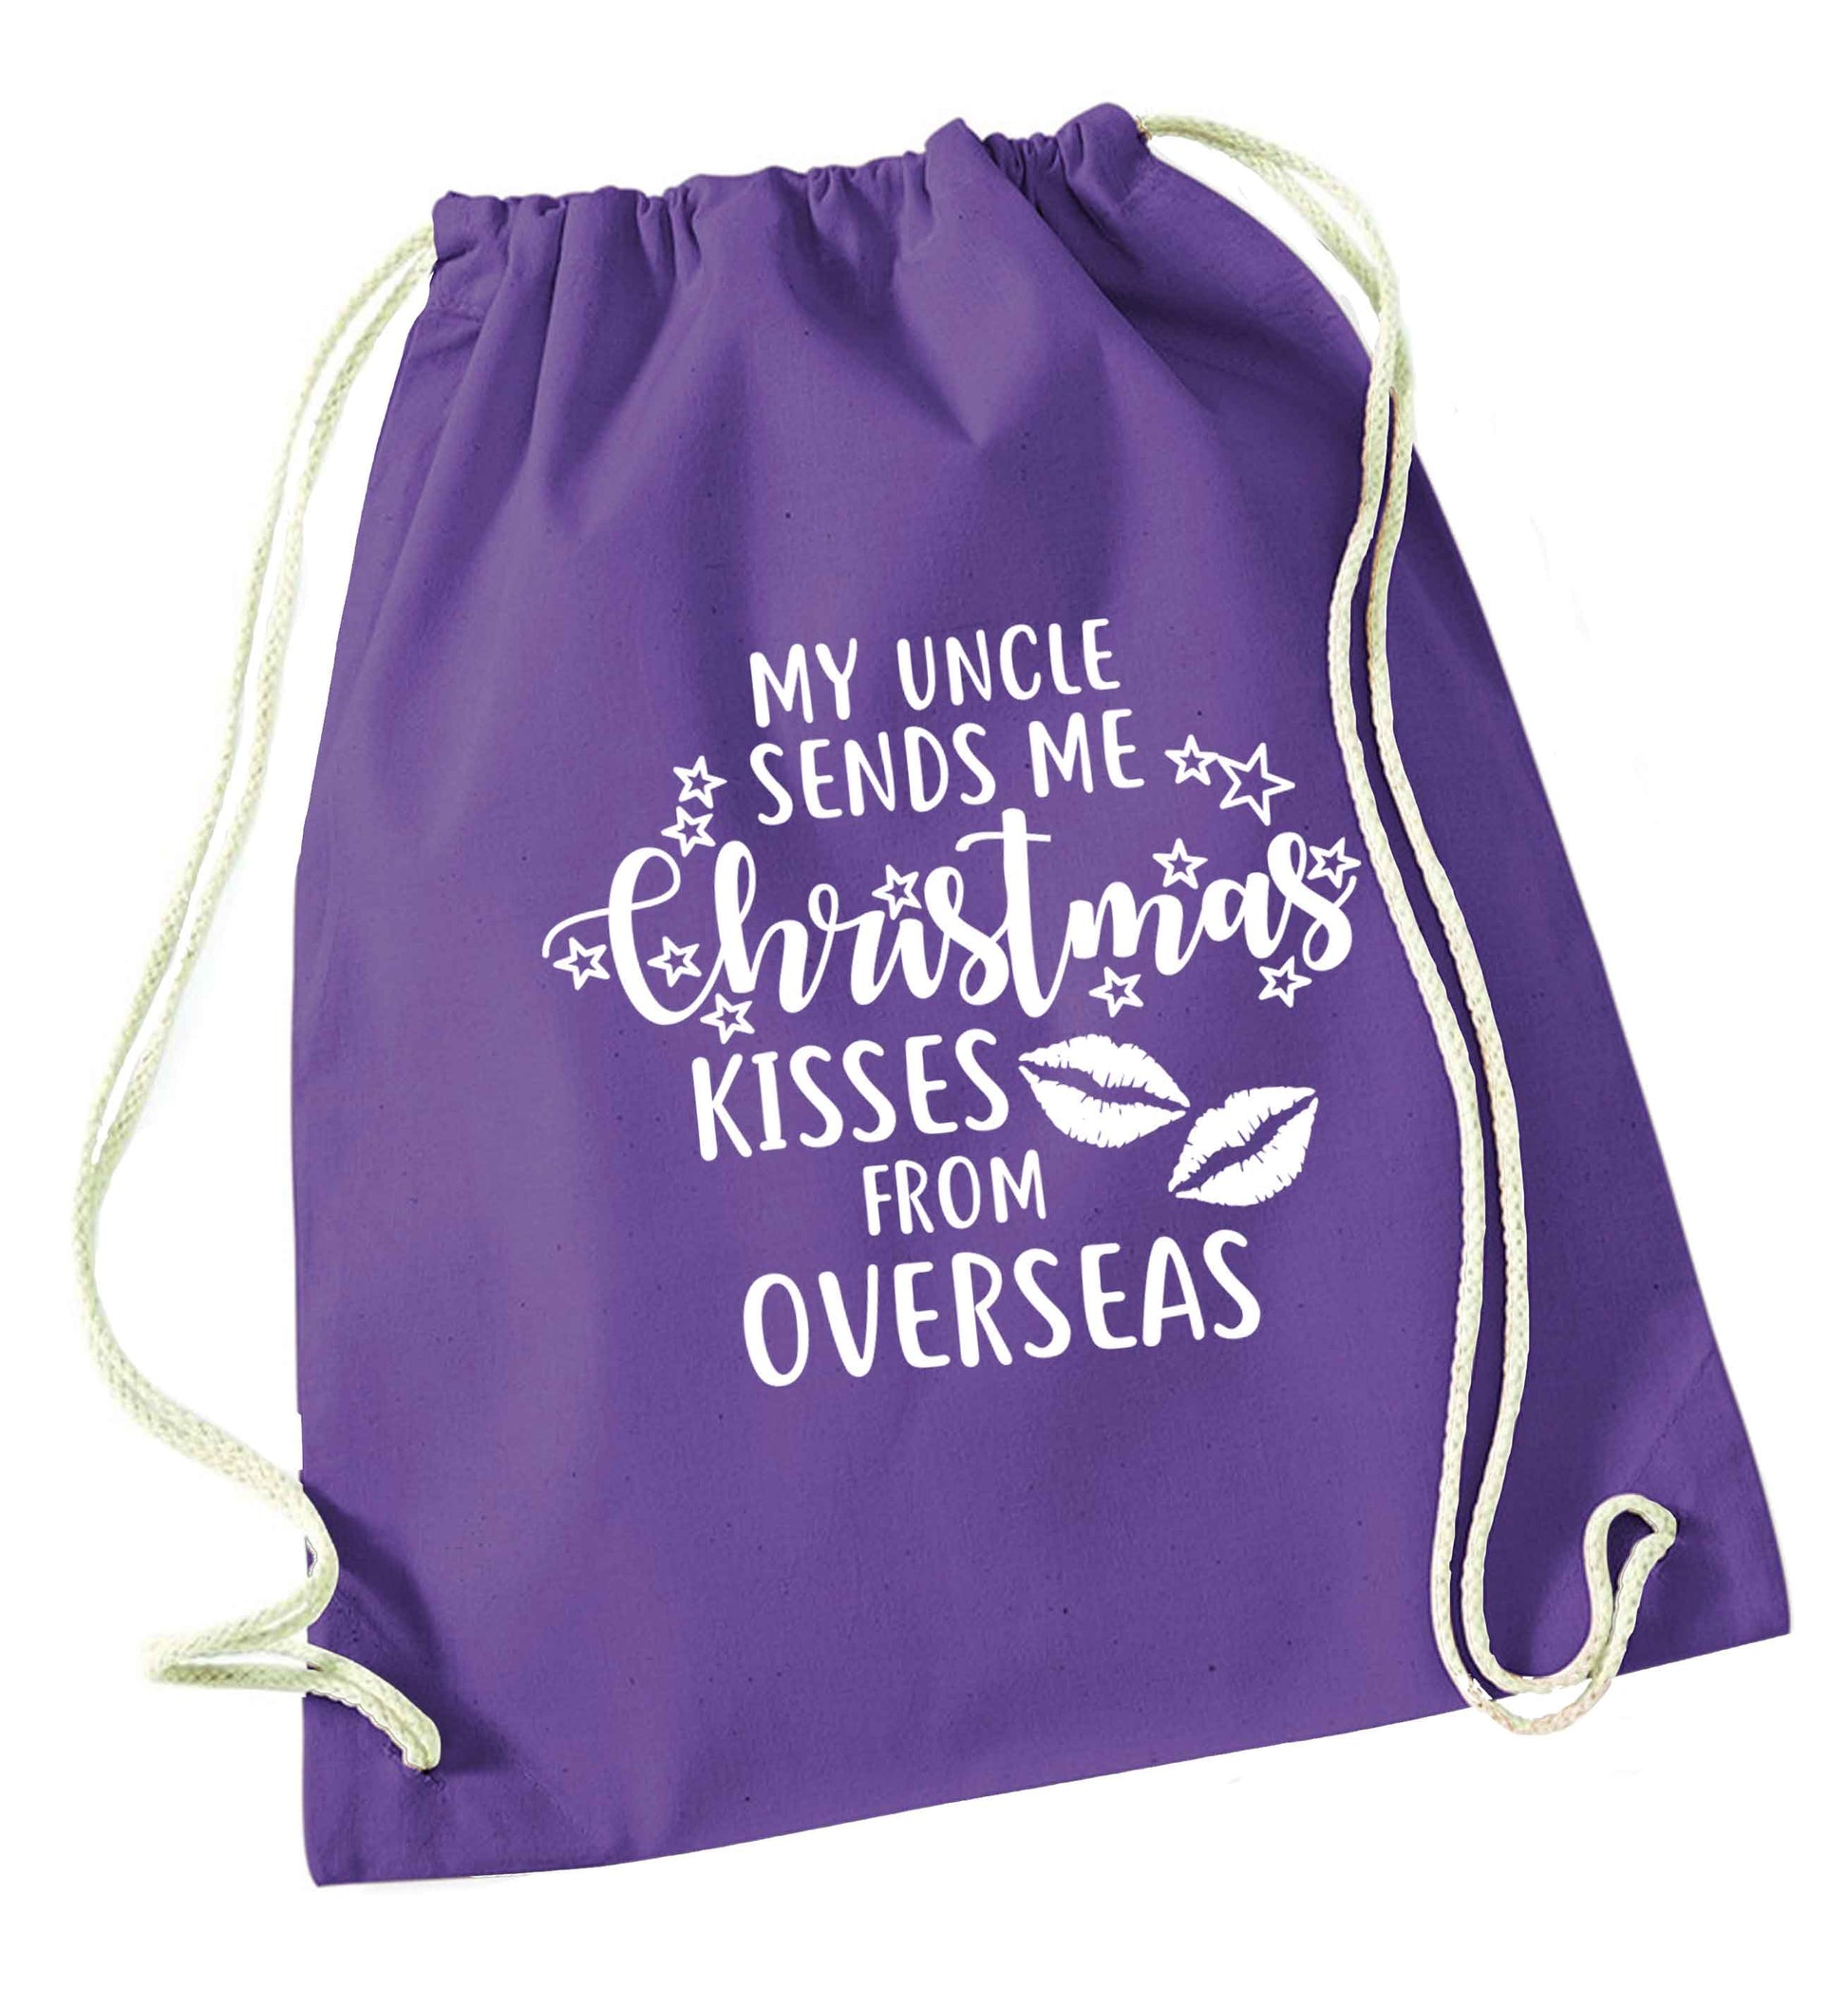 Brother Christmas Kisses Overseas purple drawstring bag